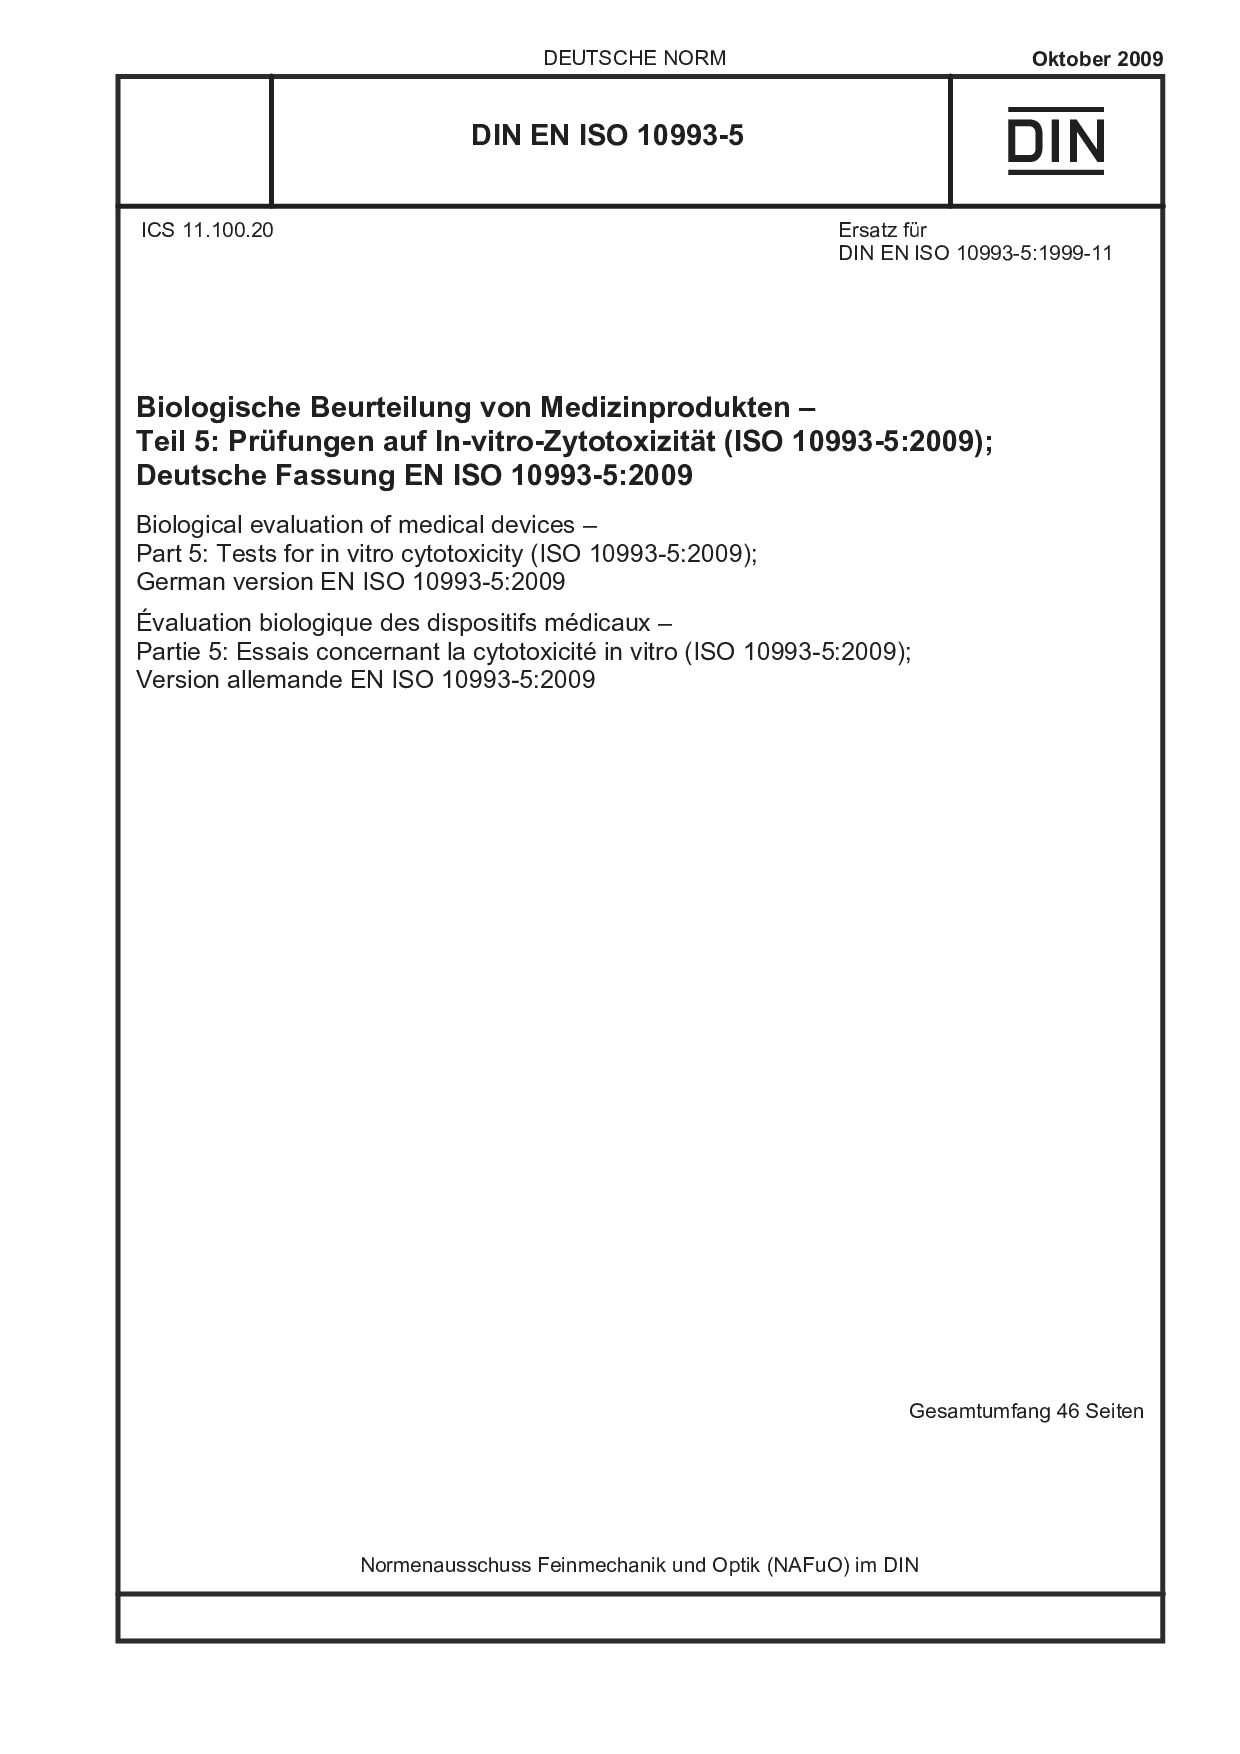 DIN EN ISO 10993-5:2009封面图